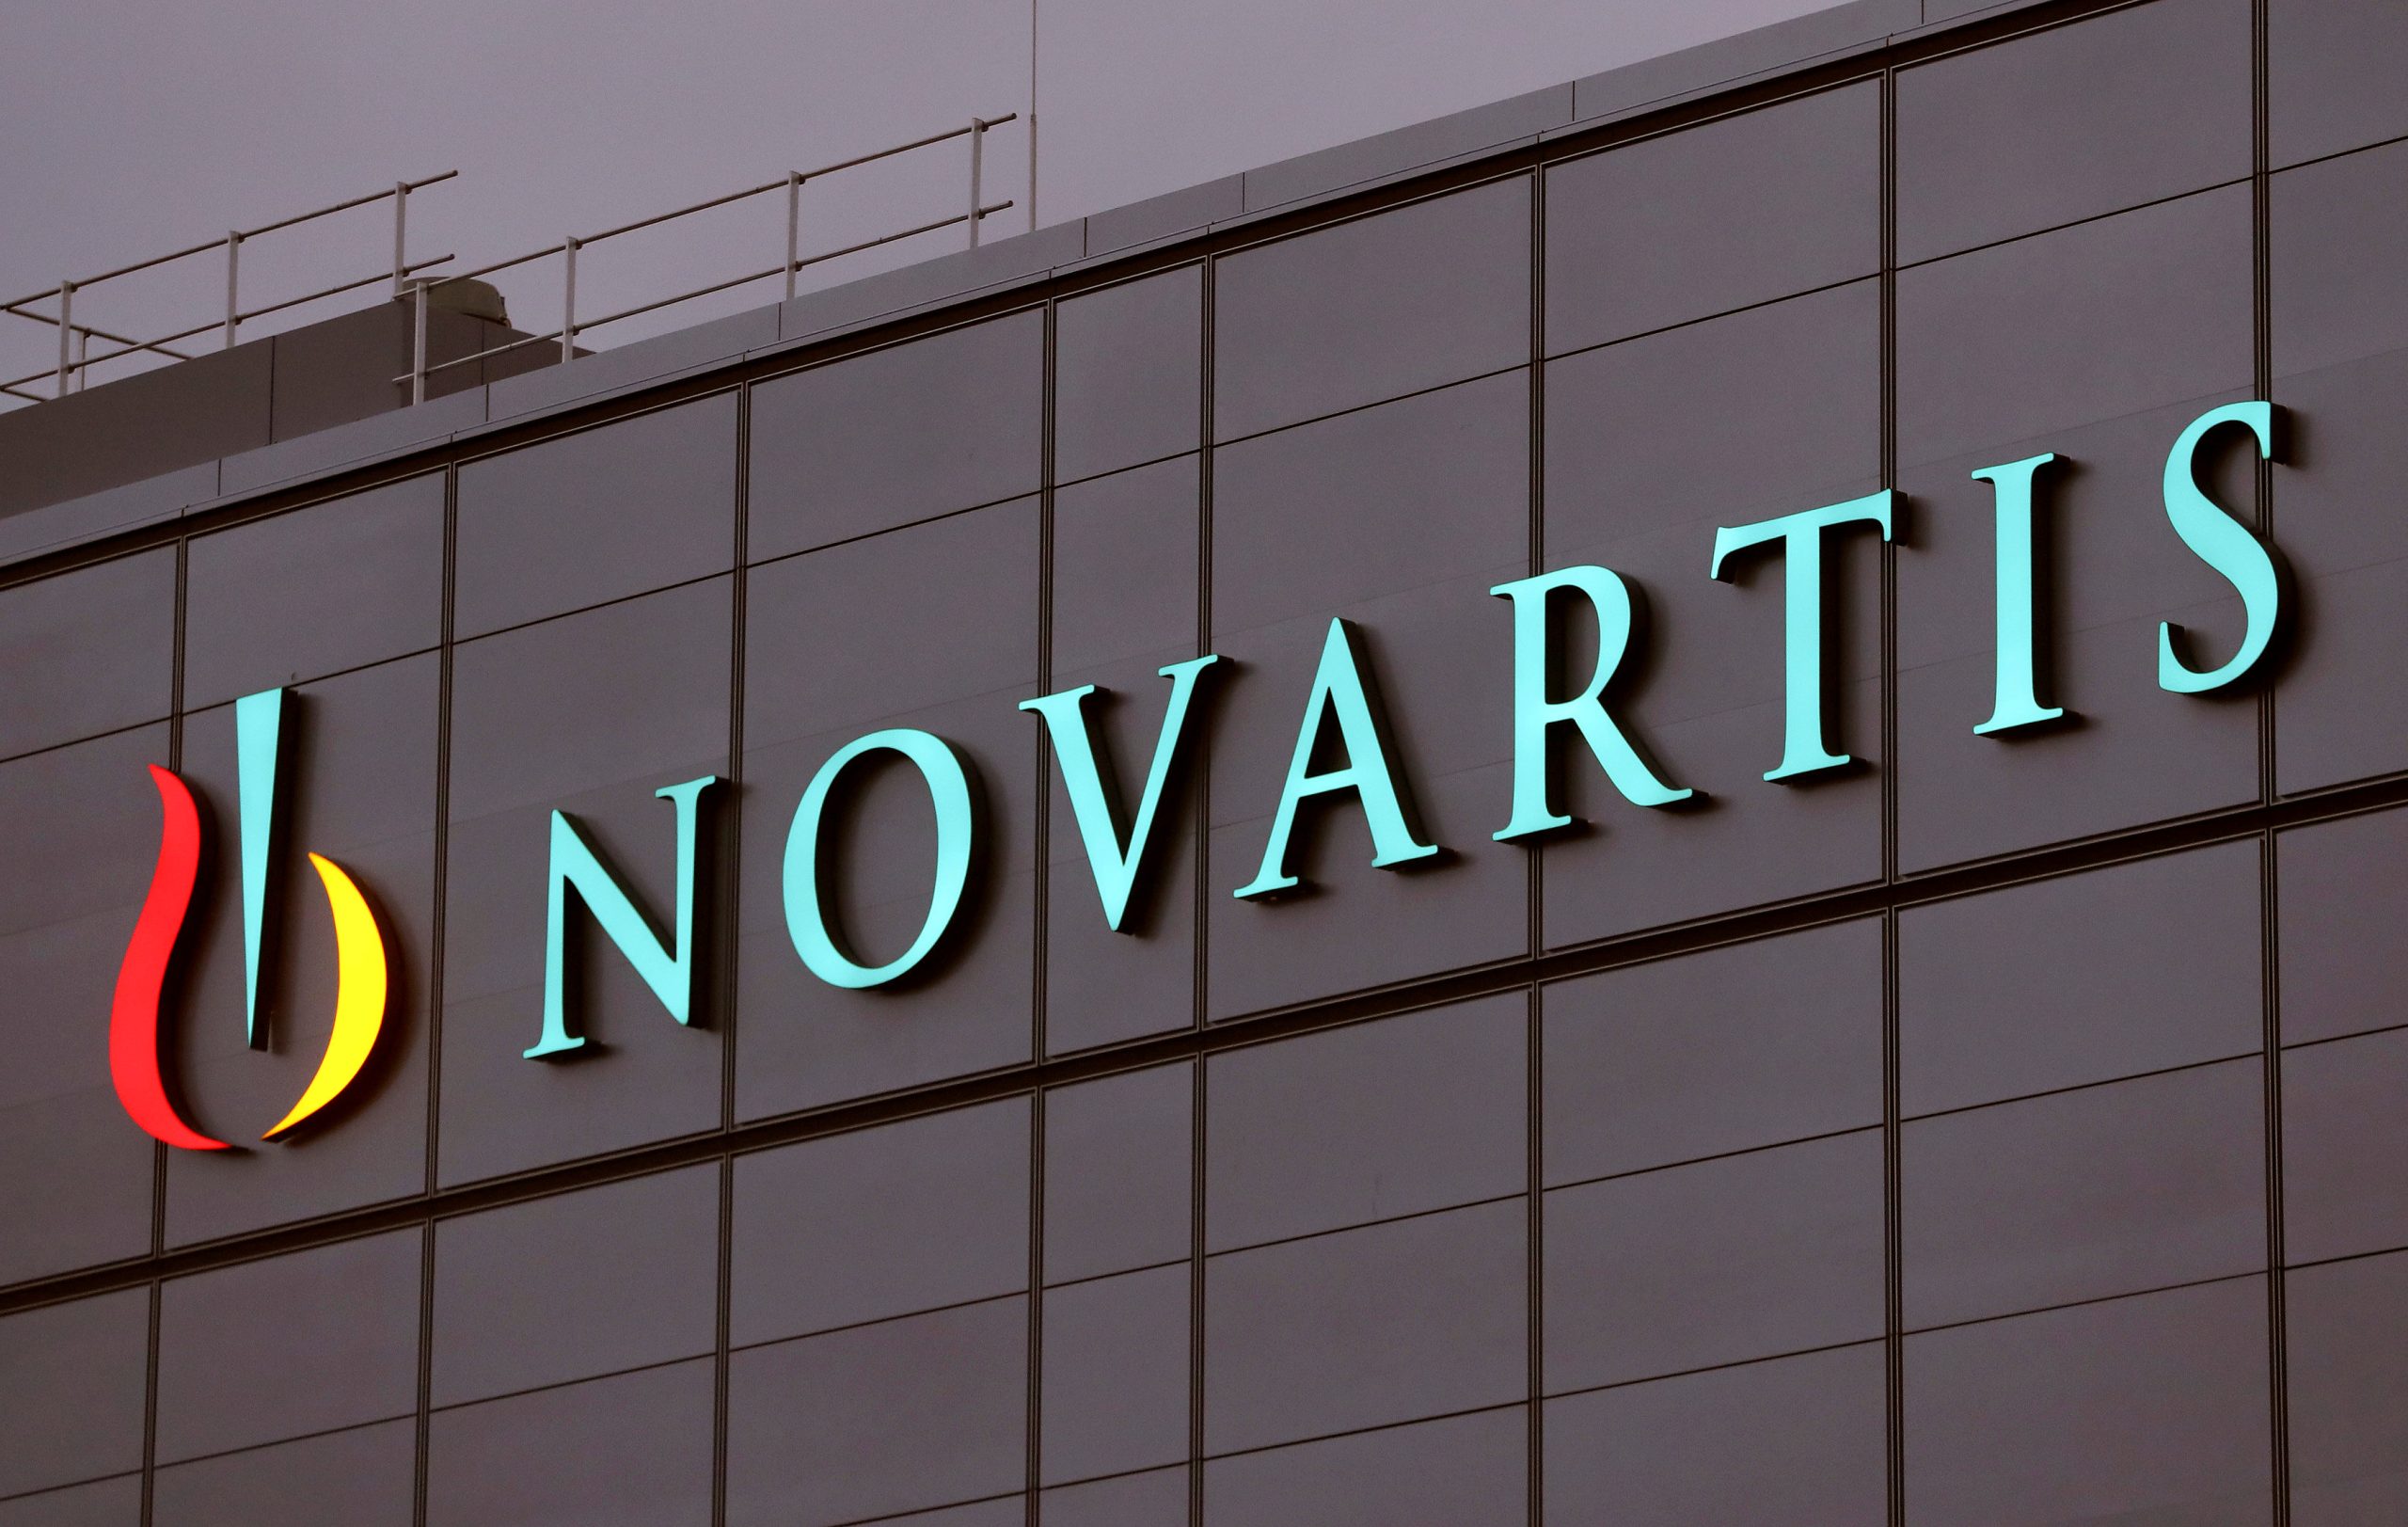 «Κόβει» 8.000 θέσεις εργασίας η Novartis!